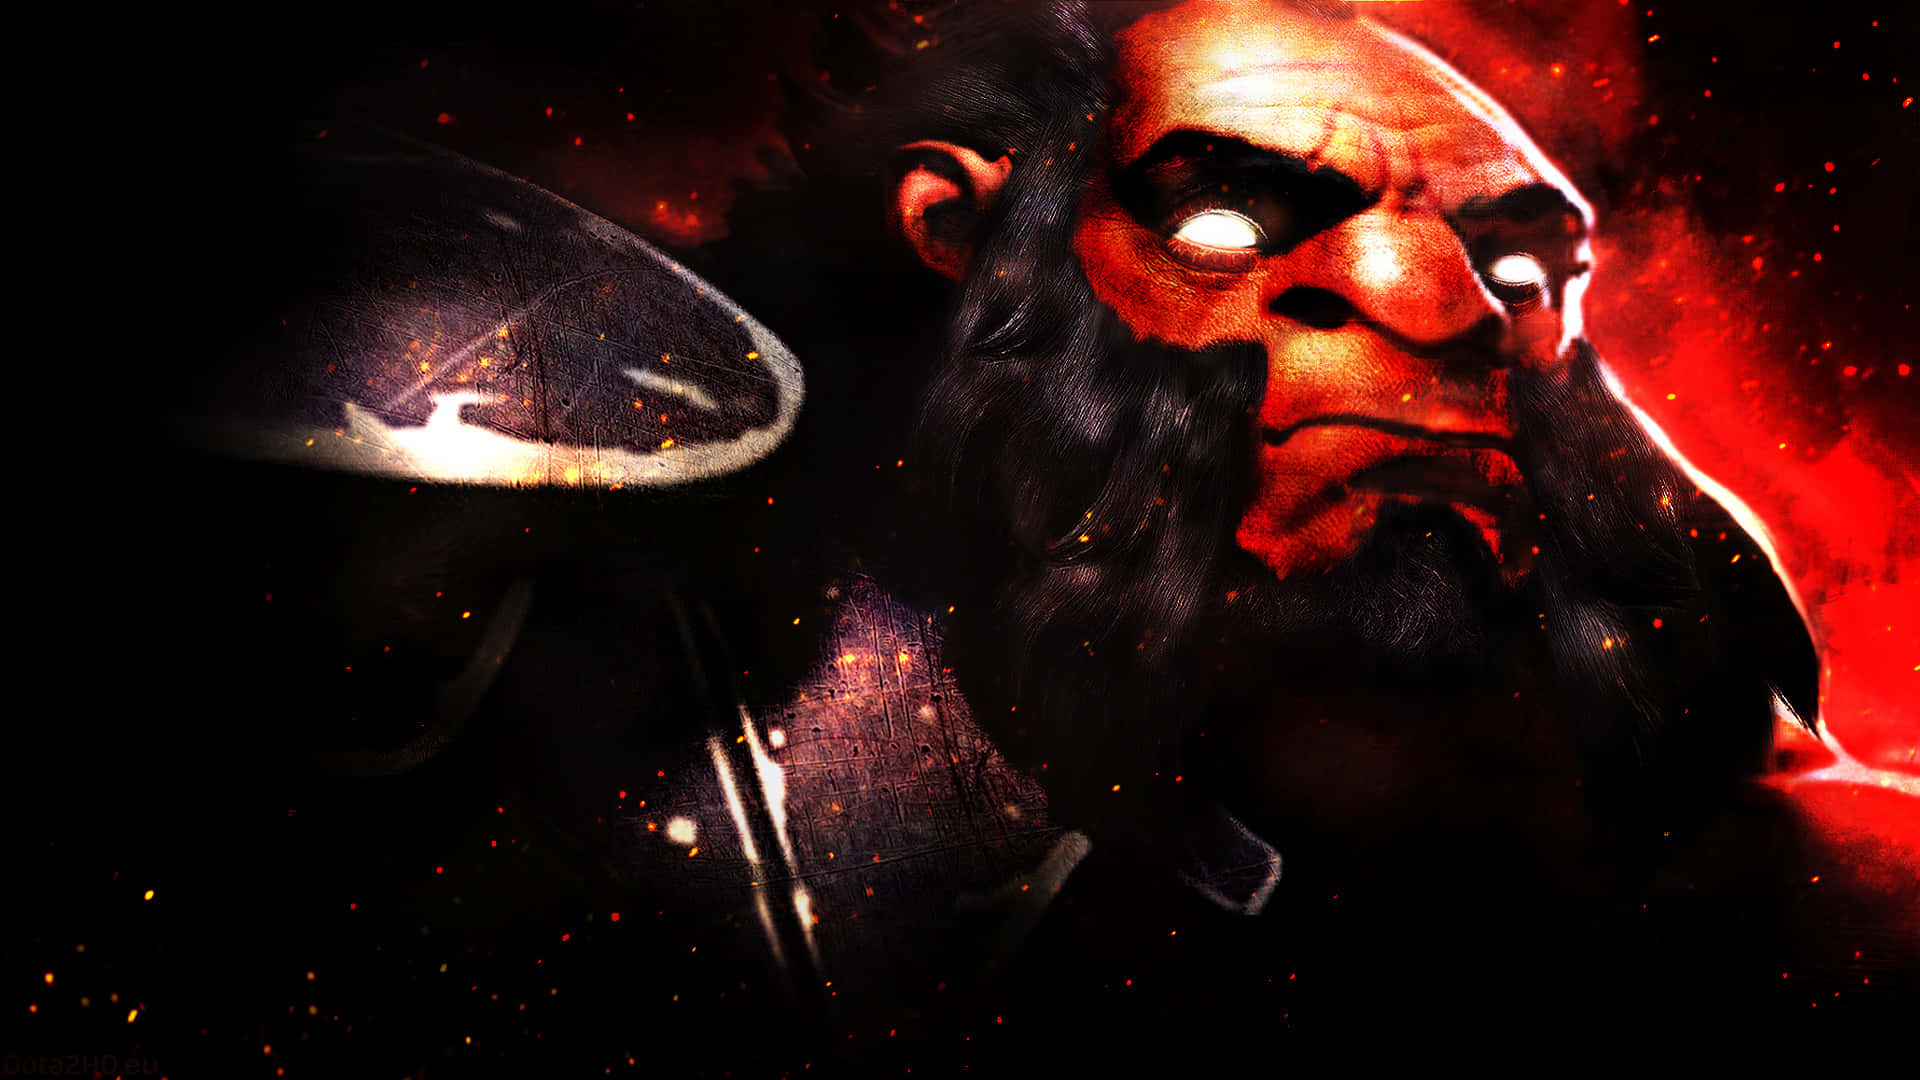 Eincharakter Aus Dem Spiel World Of Warcraft. Wallpaper